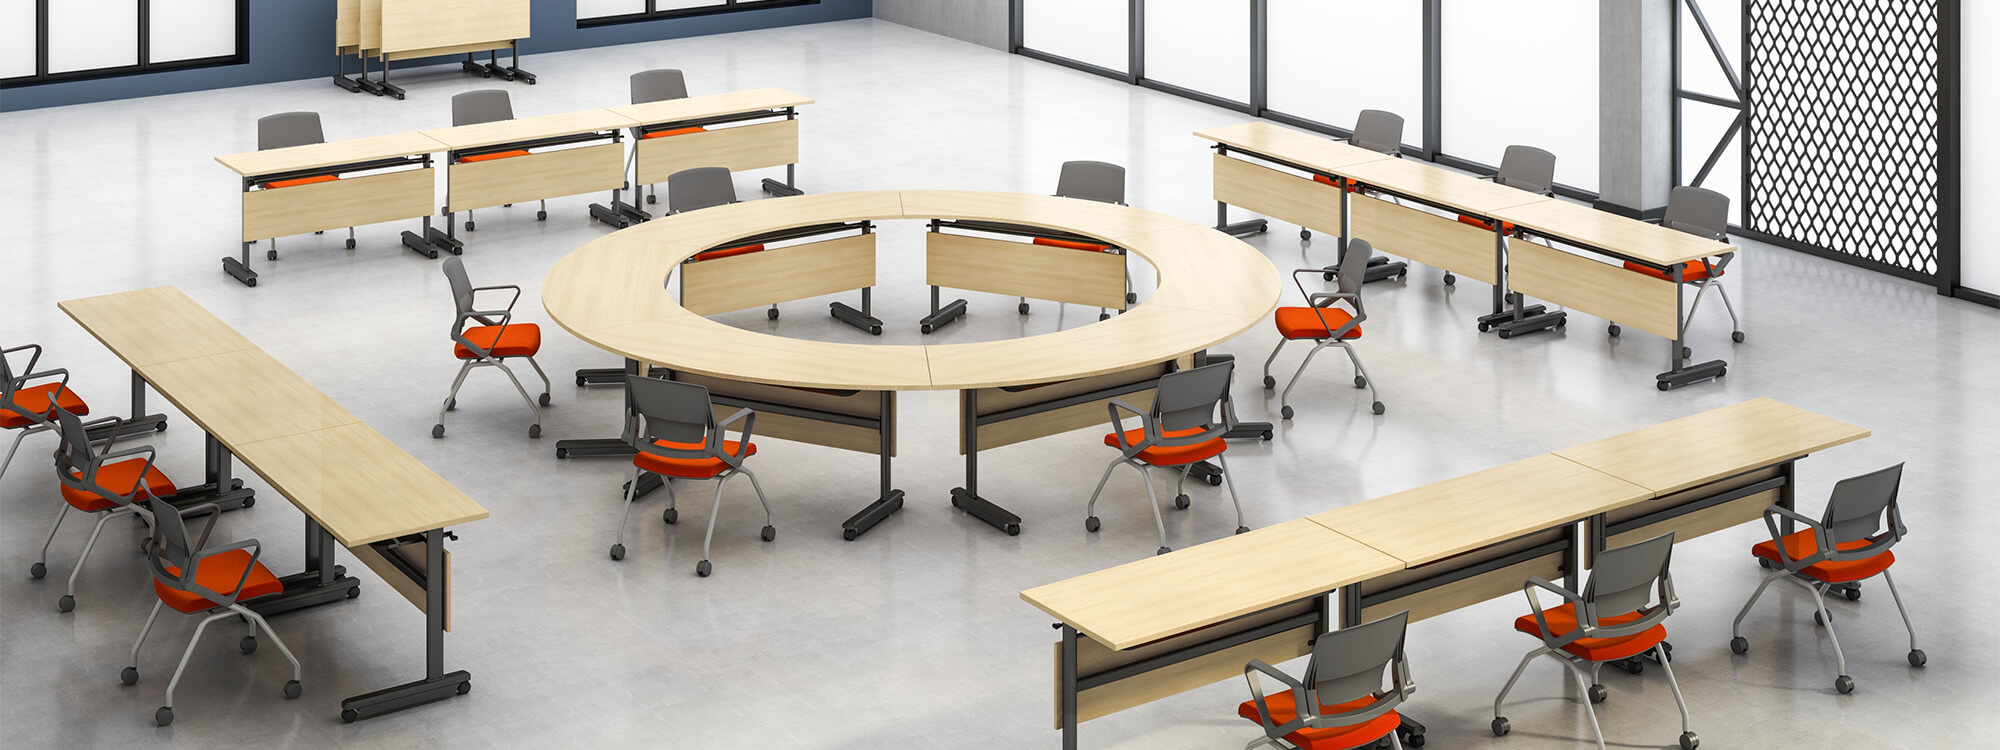 Puede estar compuesto por mesas de entrenamiento de madera redondas y rectangulares y escritorios móviles